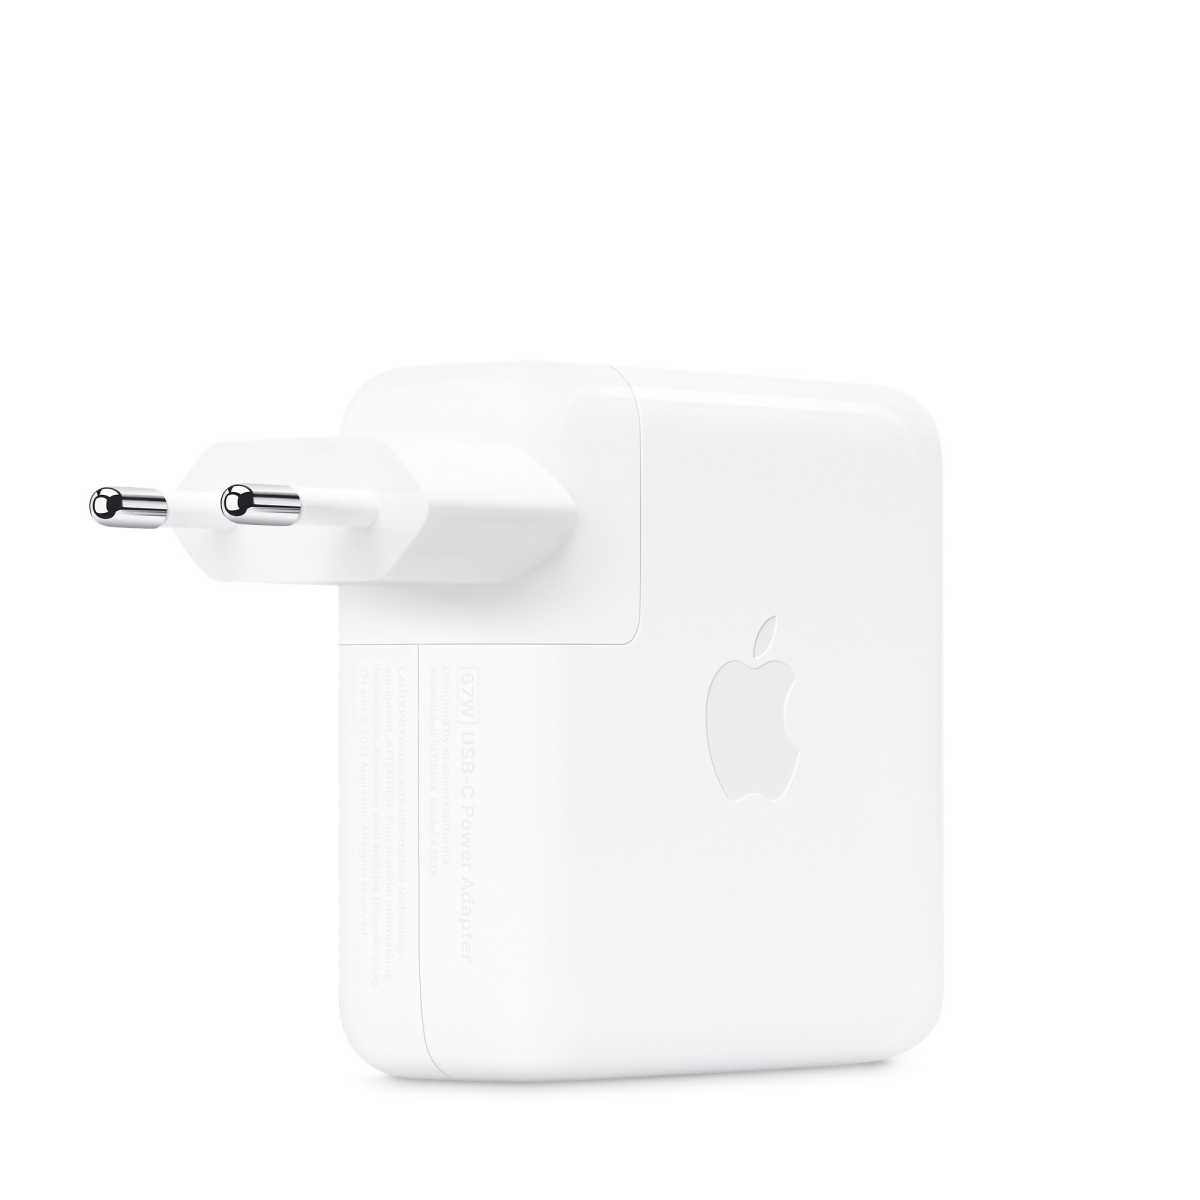 Verwenden Sie, wenn möglich, Originalnetzteile von Apple – Drittanbieter-Geräte können Störtquellen sein.